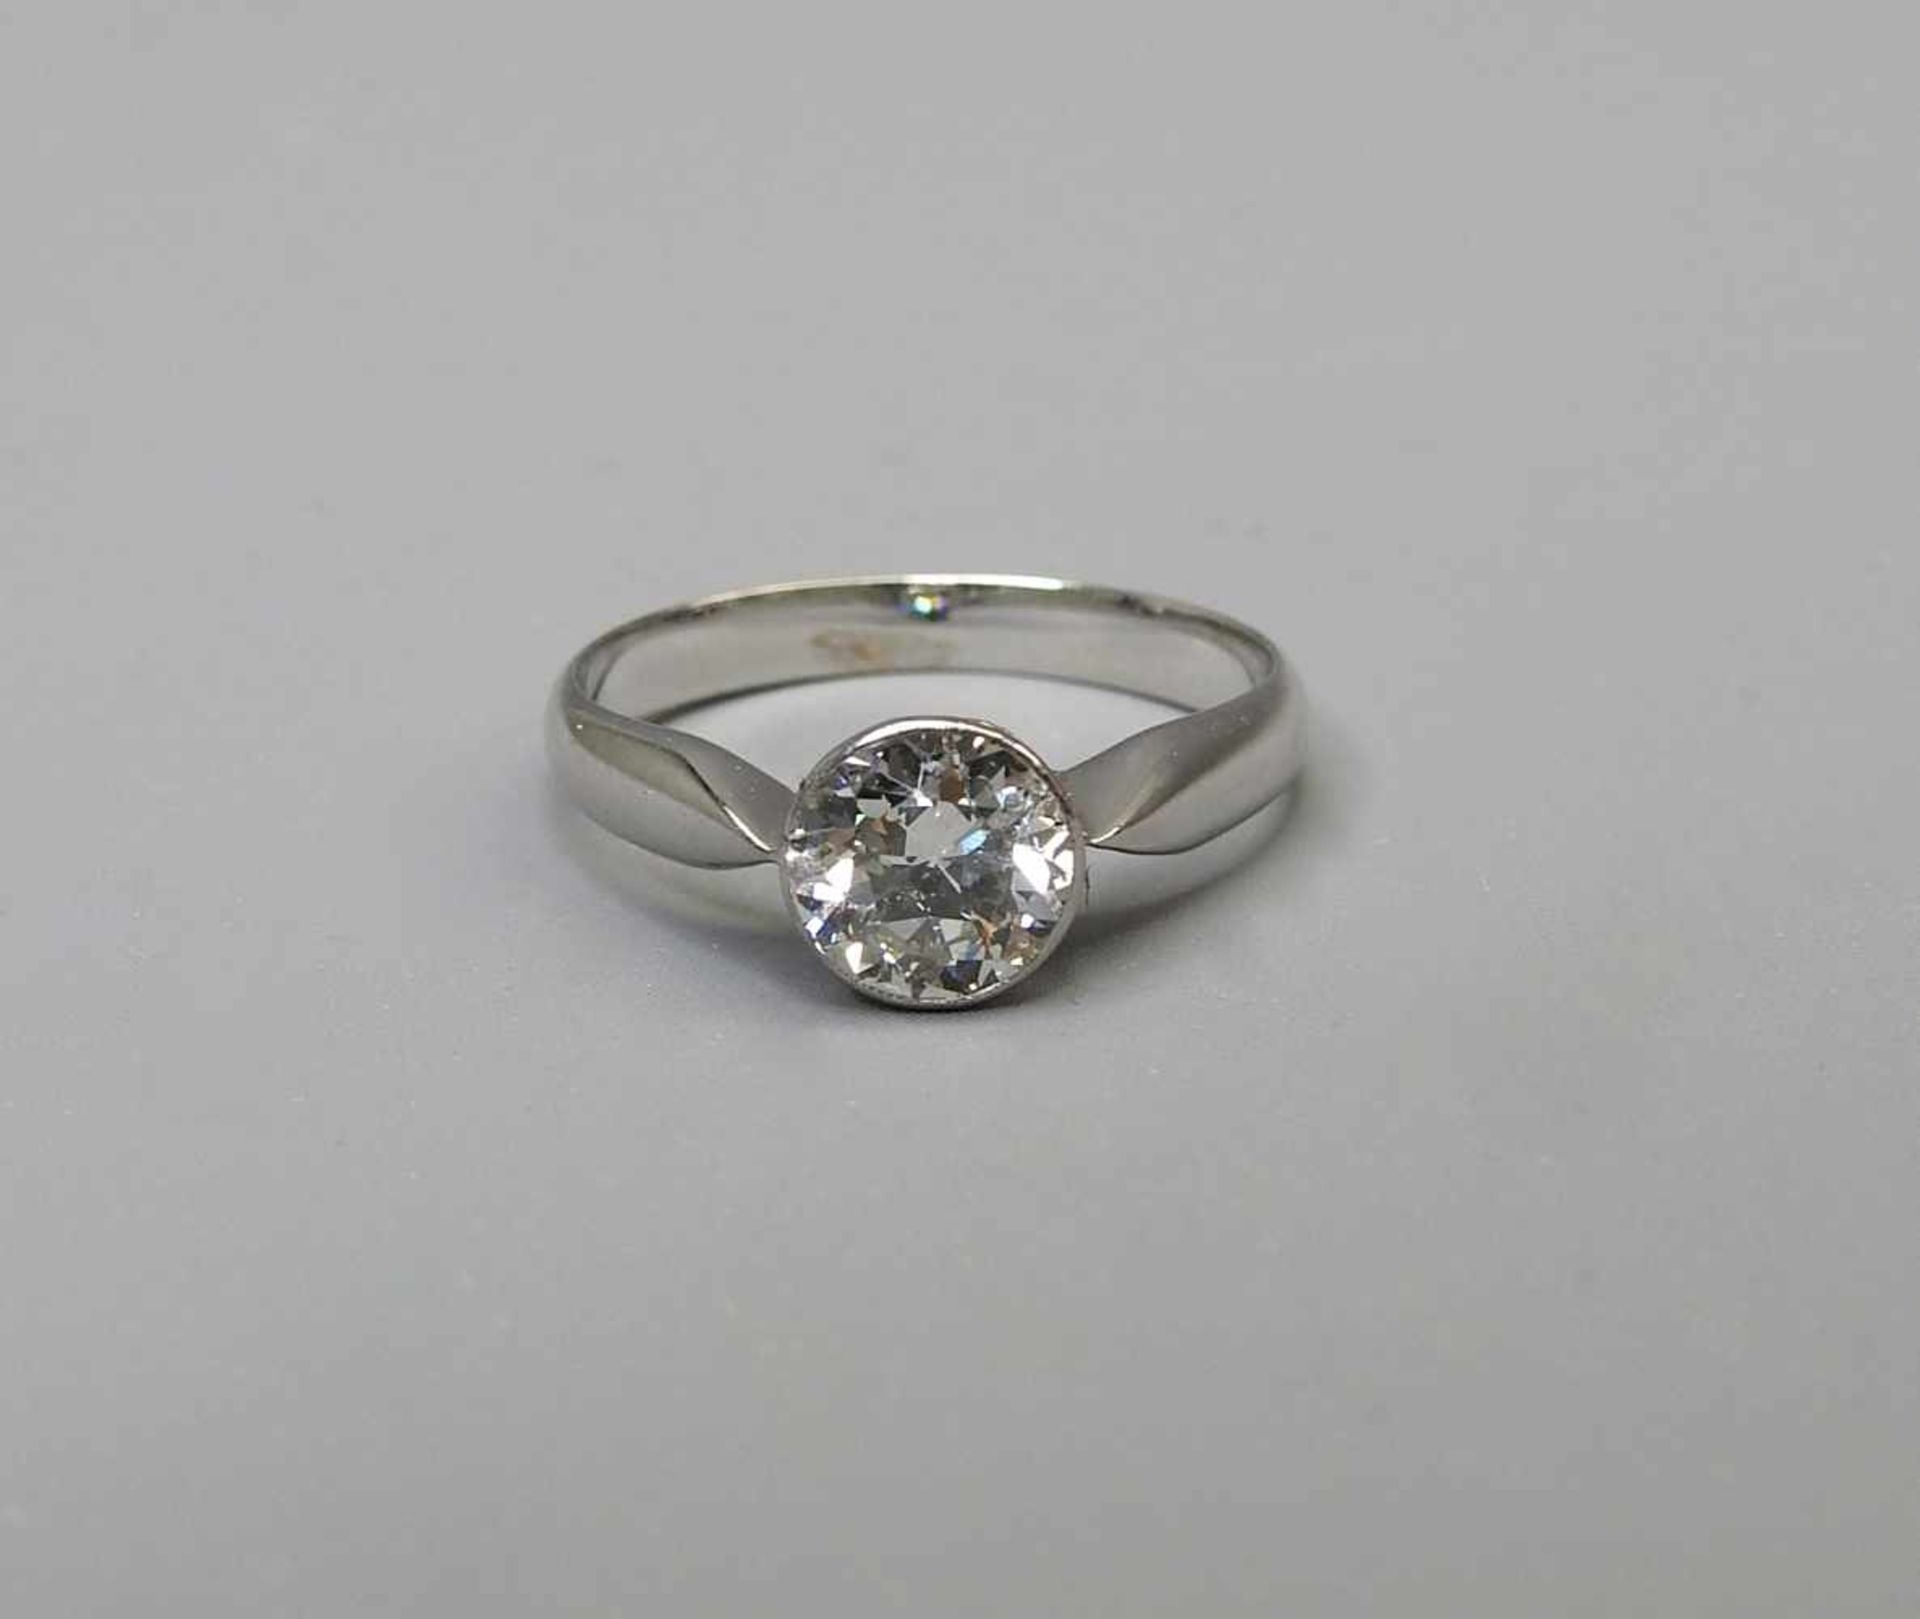 Diamantring14 K. Weißgold mit einem Diamanten von ca. 1 ct., Farbe G, P1. Ringgröße 51